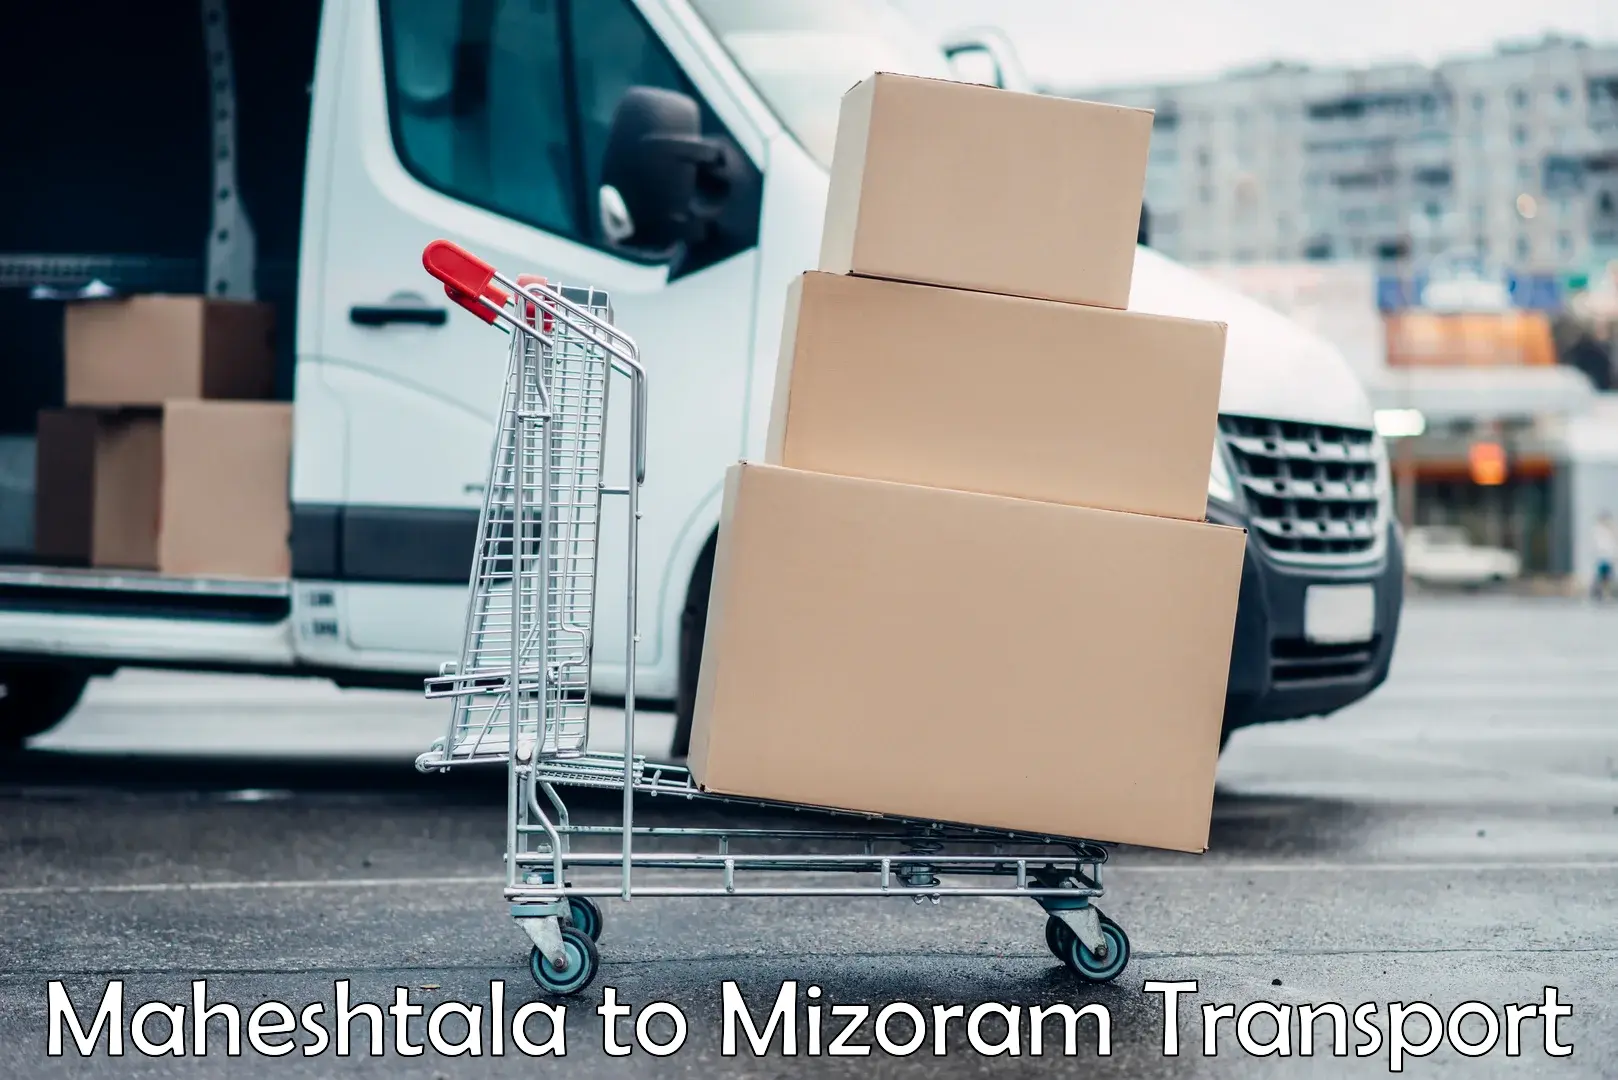 Daily transport service Maheshtala to Khawzawl